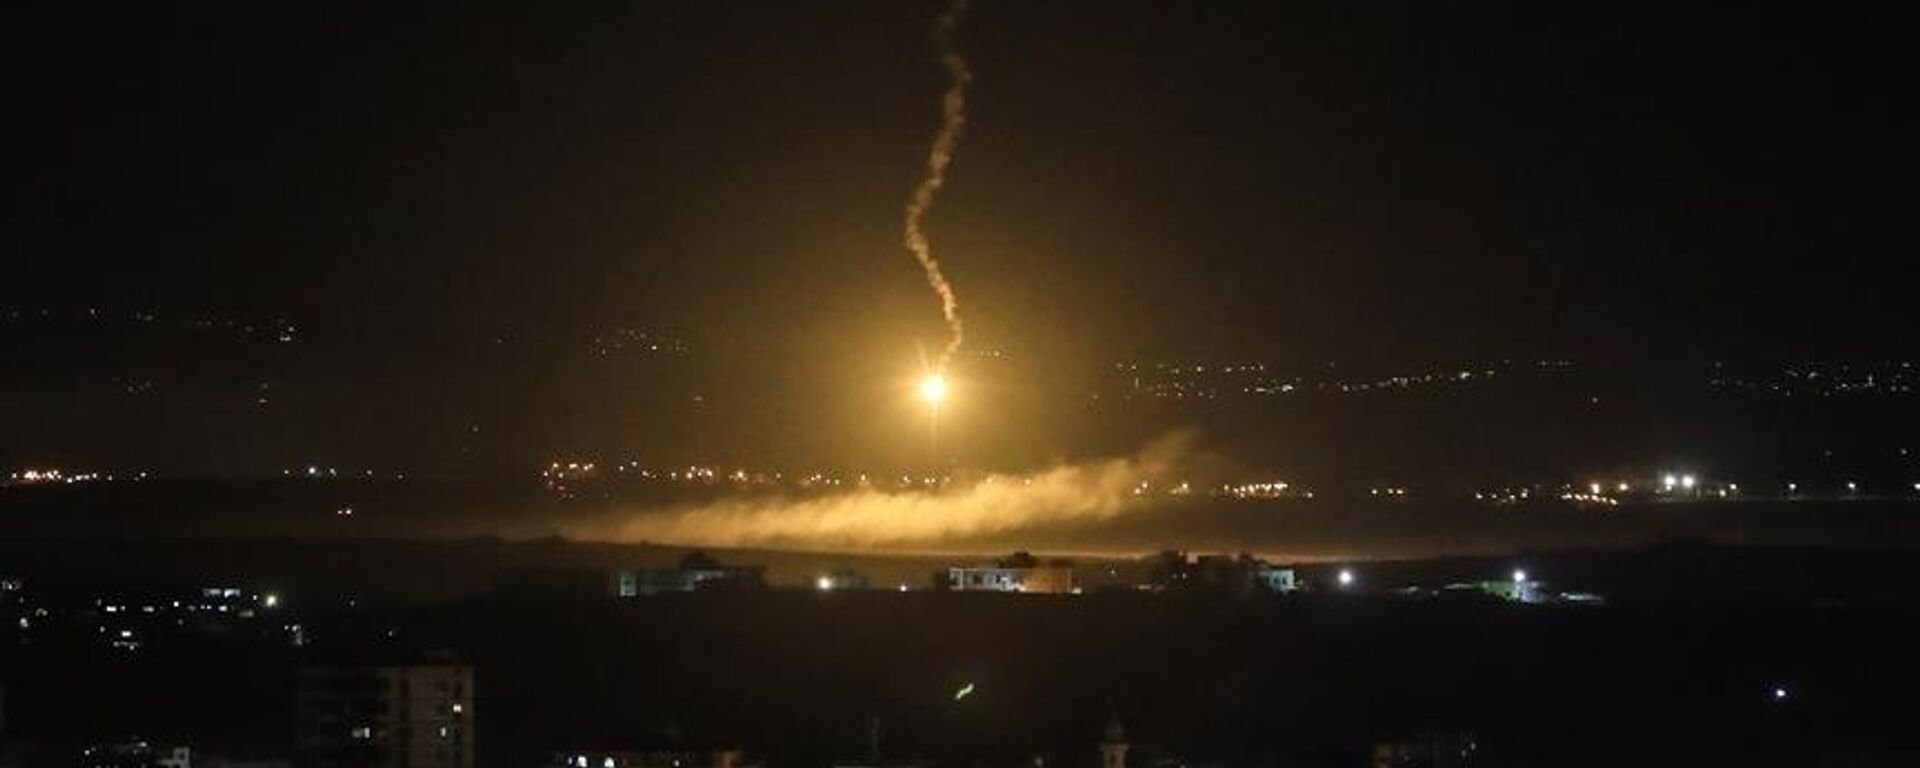 Suriye'nin başkenti Şam'da bazı noktalara İsrail tarafından hava saldırısı gerçekleştirildiği öne sürüldü. Hava savunma sistemlerinin saldırıları başarıyla püskürttüğü bildirildi.  - Sputnik Türkiye, 1920, 04.04.2023